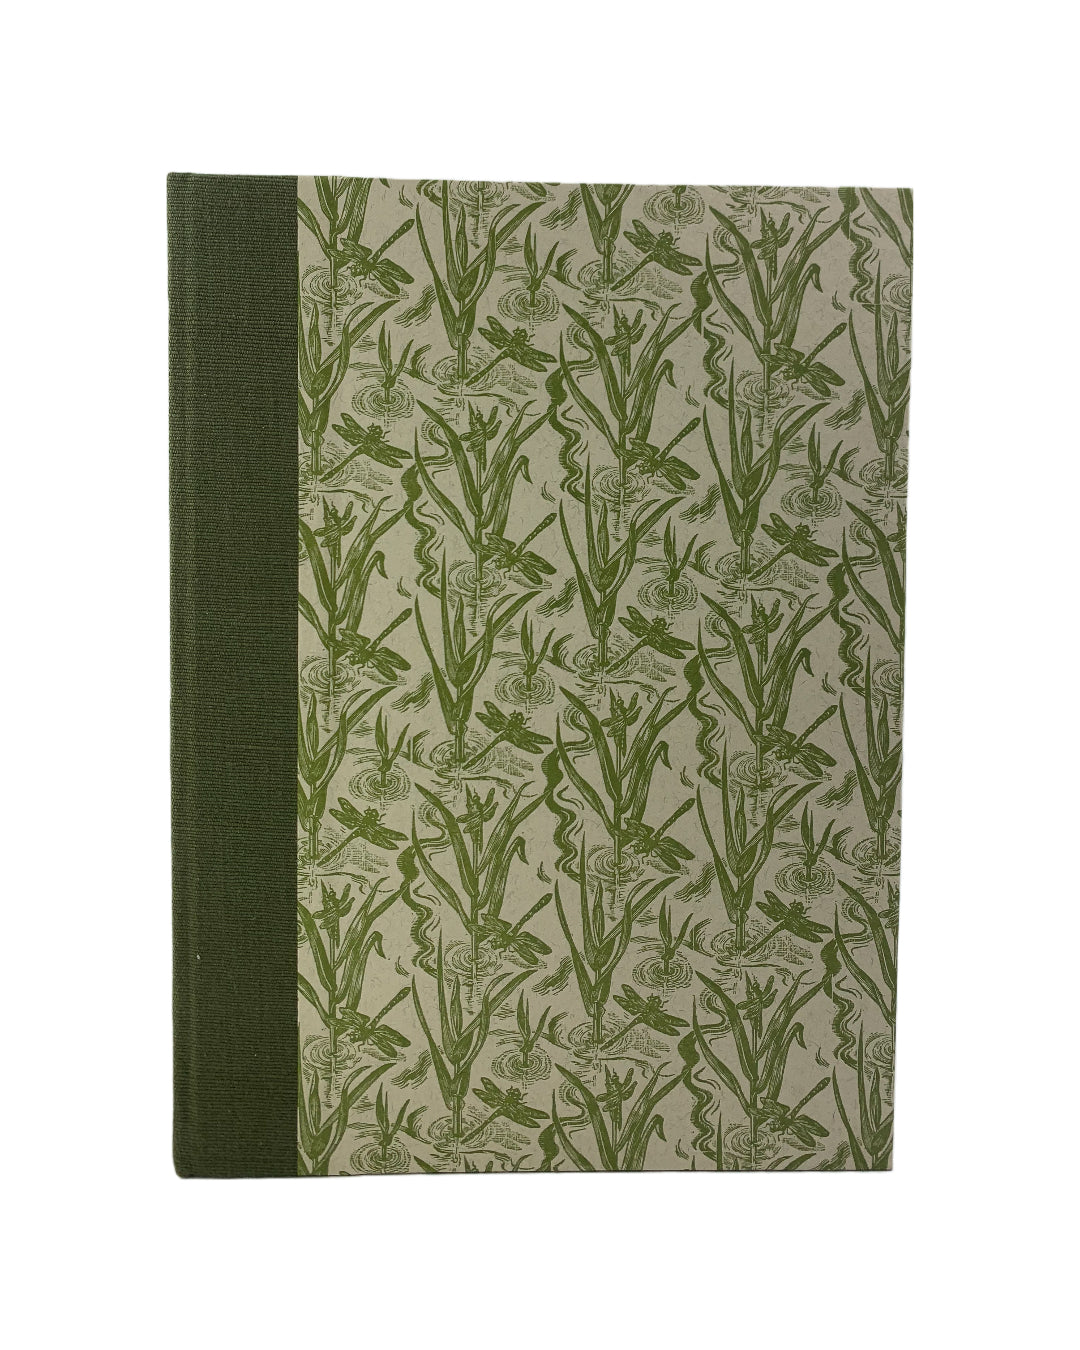 Whittington Press | Cheltenham Rare Books